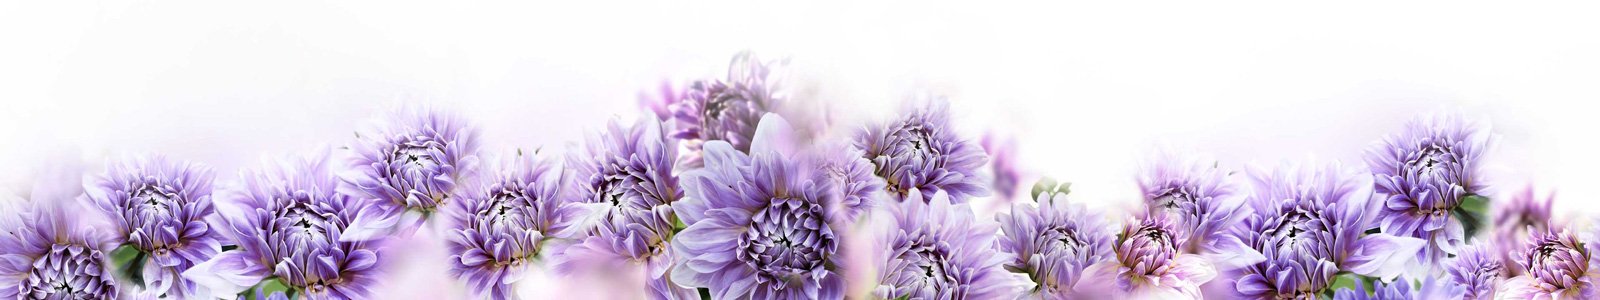 №6790 - Нежные фиолетовые цветы на светлом фоне